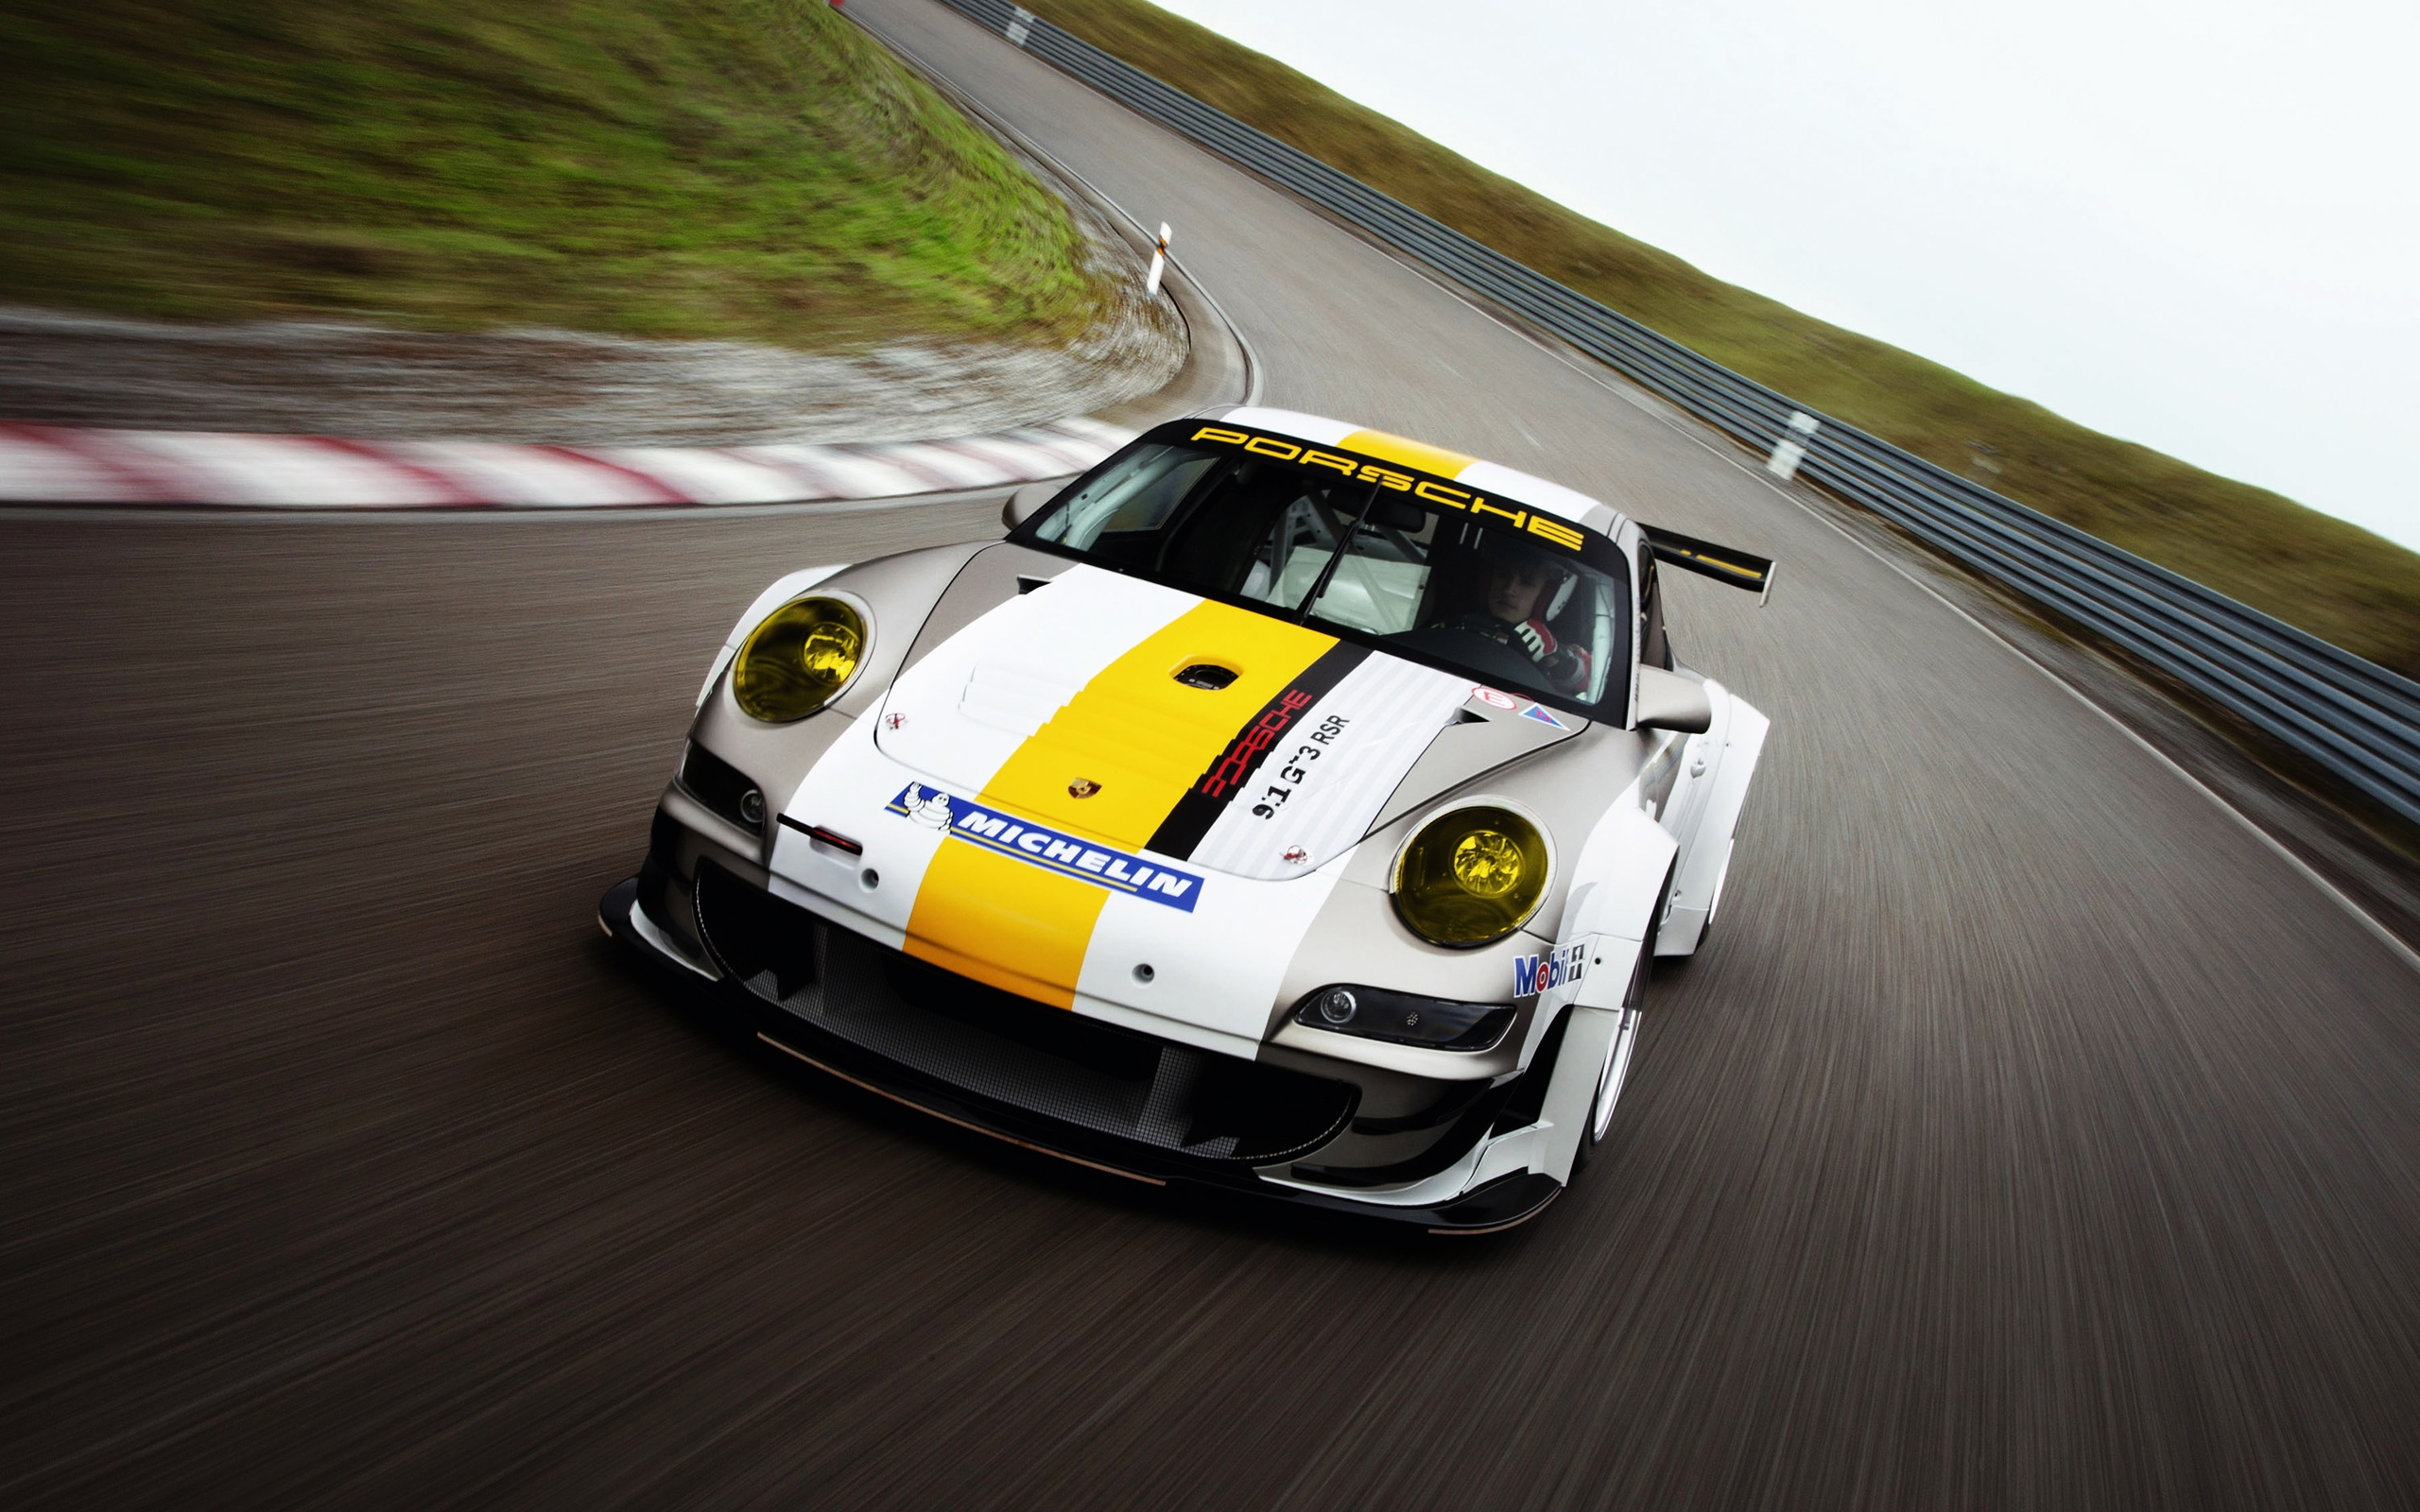 Porsche 911 GT3 RSR race car in high-definition desktop wallpaper